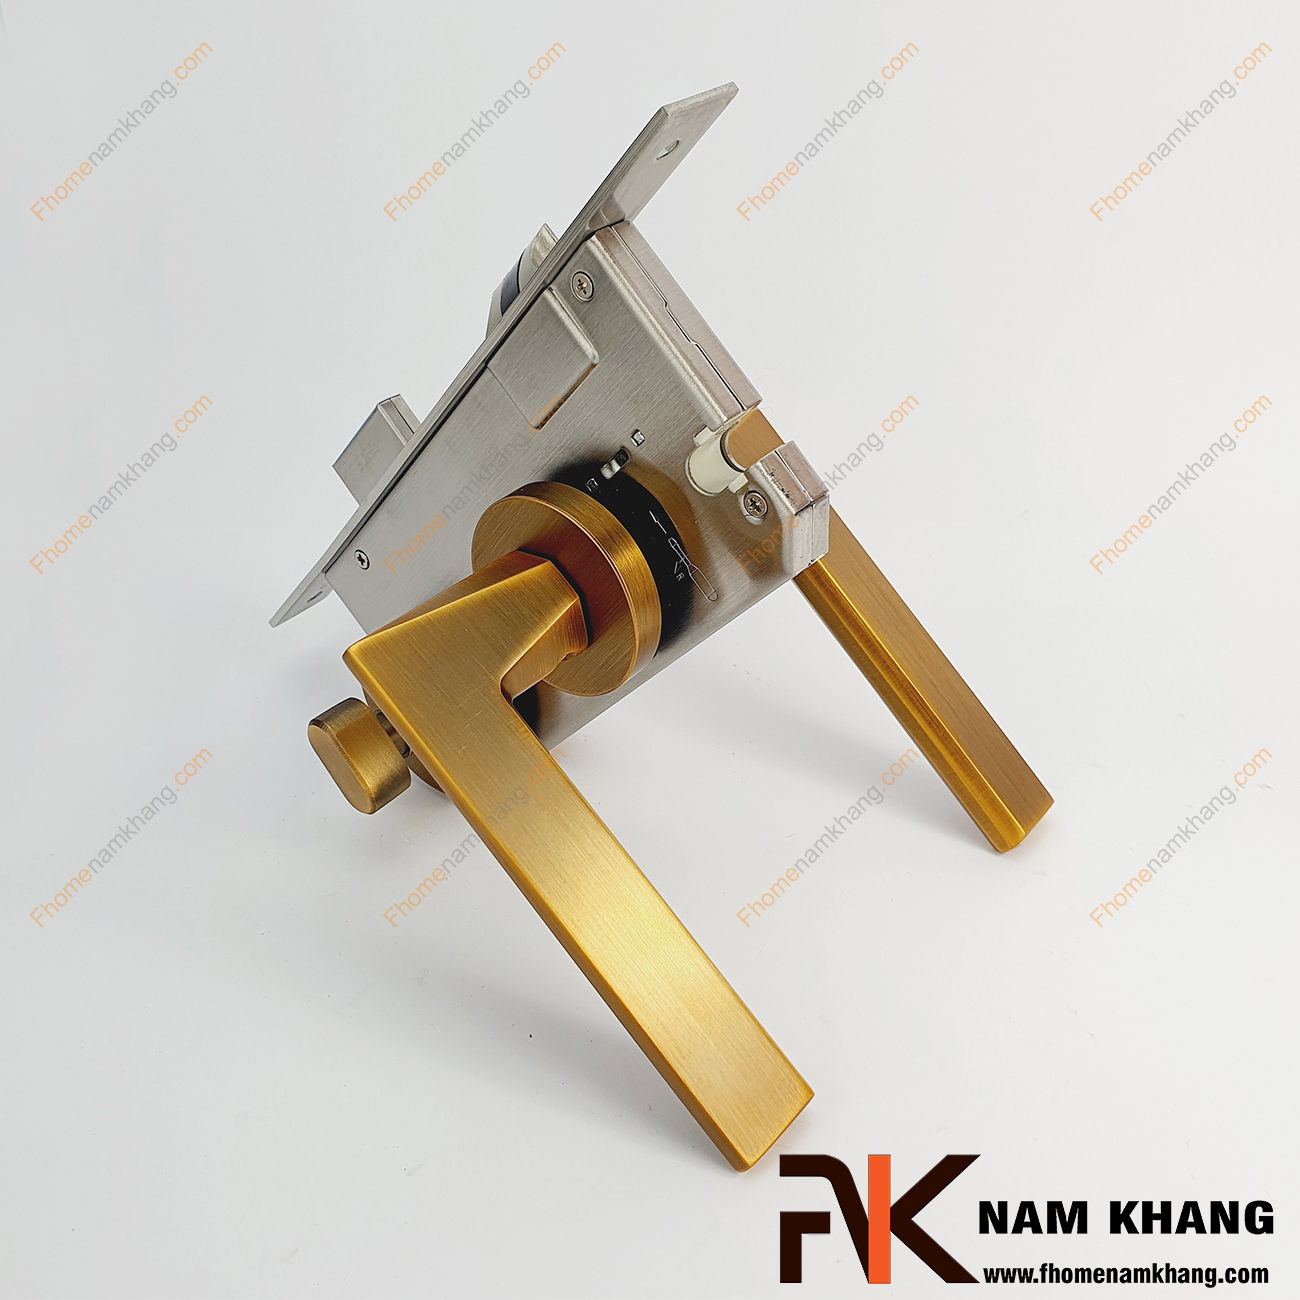 Khóa cửa phân thể bằng hợp kim cao cấp NK570-CF có thiết kế phần ốp khóa và tay gạt riêng biệt, khá nhỏ gọn và tạo được sự nổi bật độc đáo của một dòng khóa cửa.